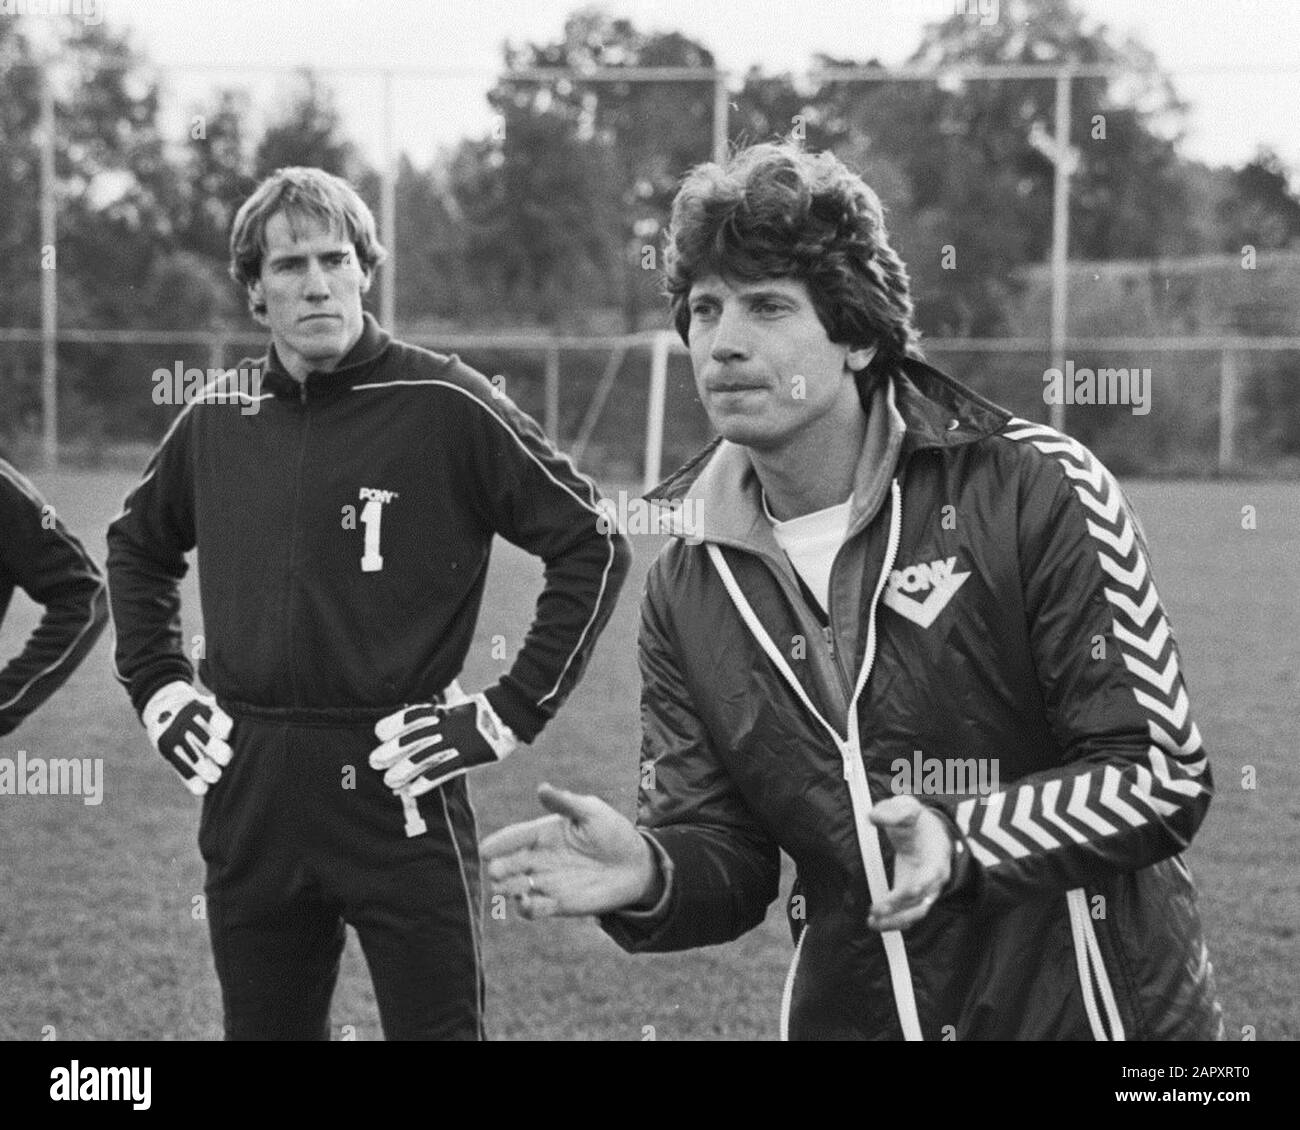 Training FC Utrecht for match Wednesday against Eintracht Frankfurt, coach Utrecht Han Berger with goalkeeper Hans van Breukelen.; Stock Photo